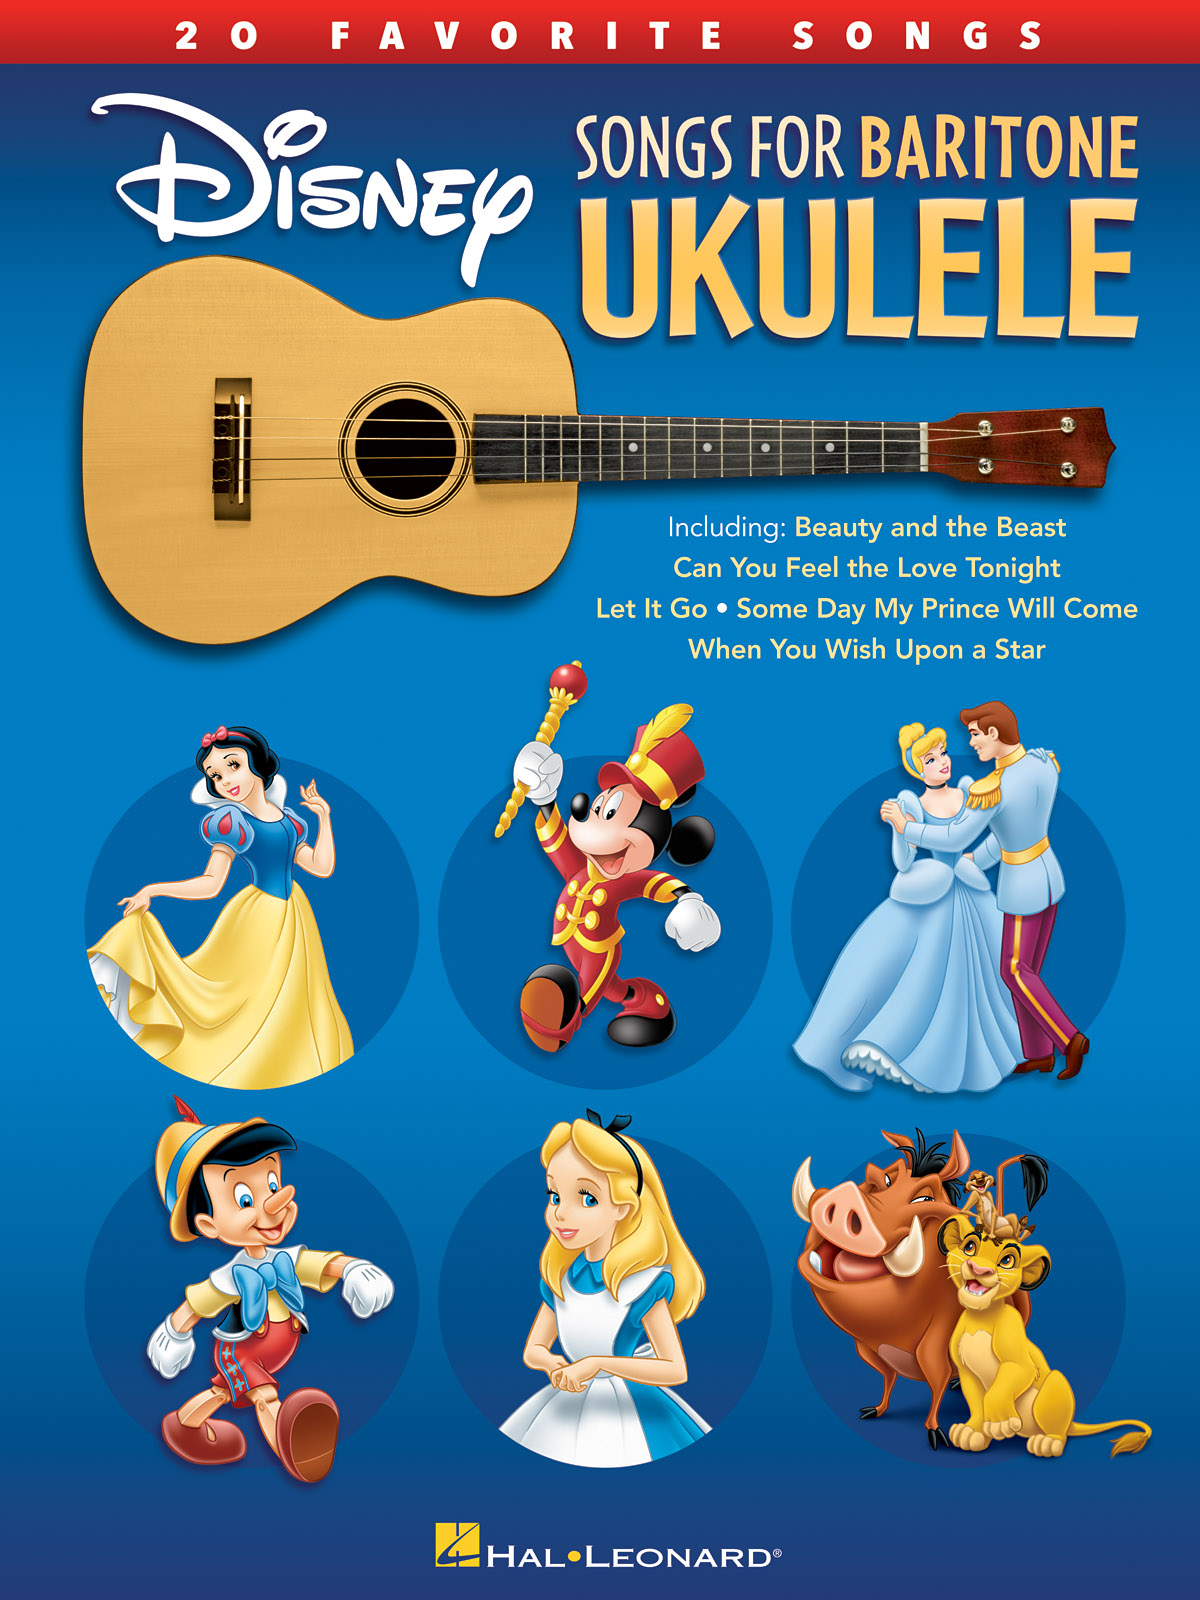 Disney Songs for Baritone Ukulele - 20 Favorite Songs - noty pro ukulele